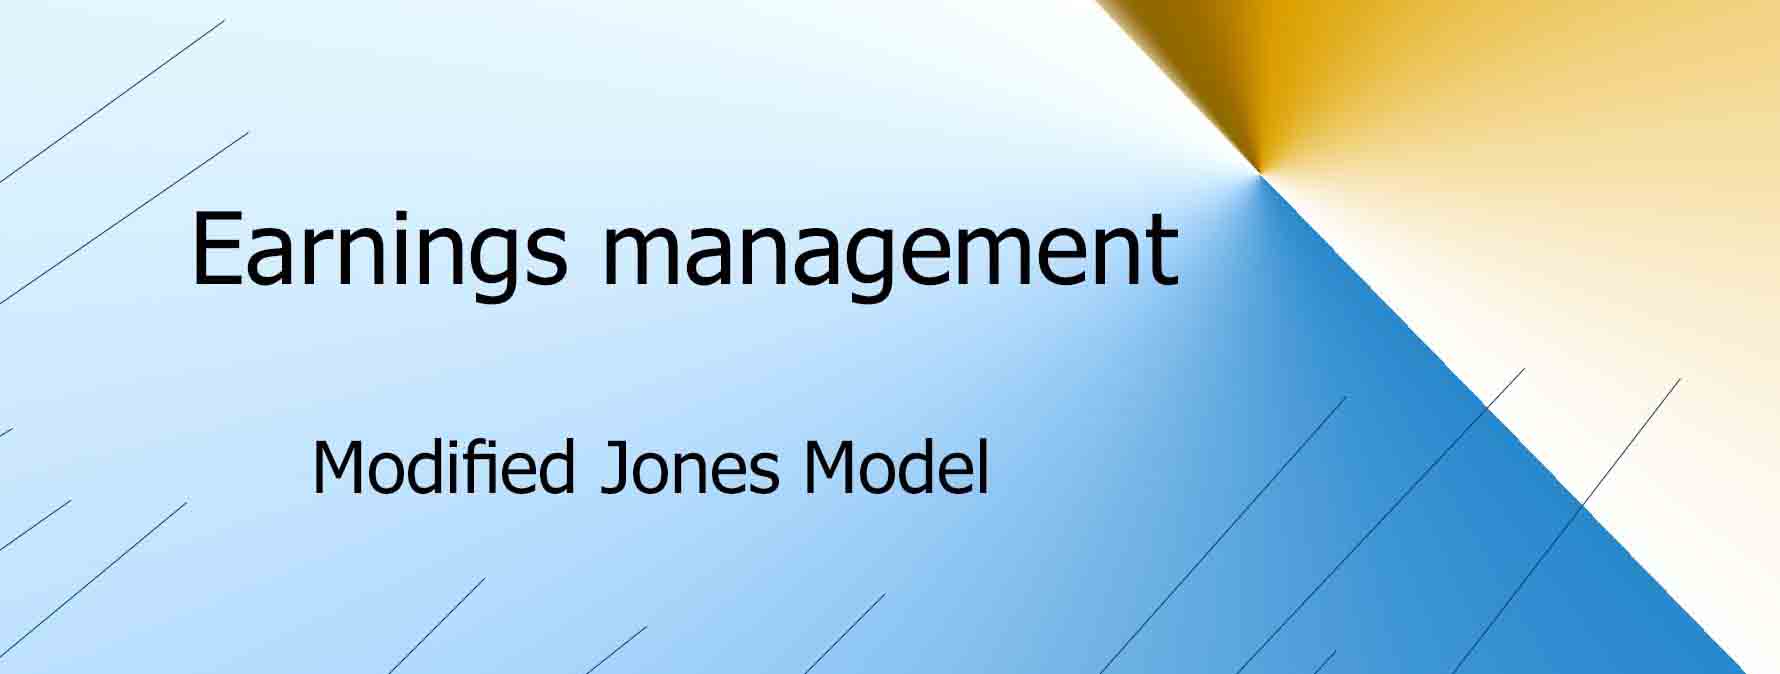 تعریف مدیریت سود تعهدی: تعریف و نحوه اندازه گیری با مدل تعدیل شده جونز 